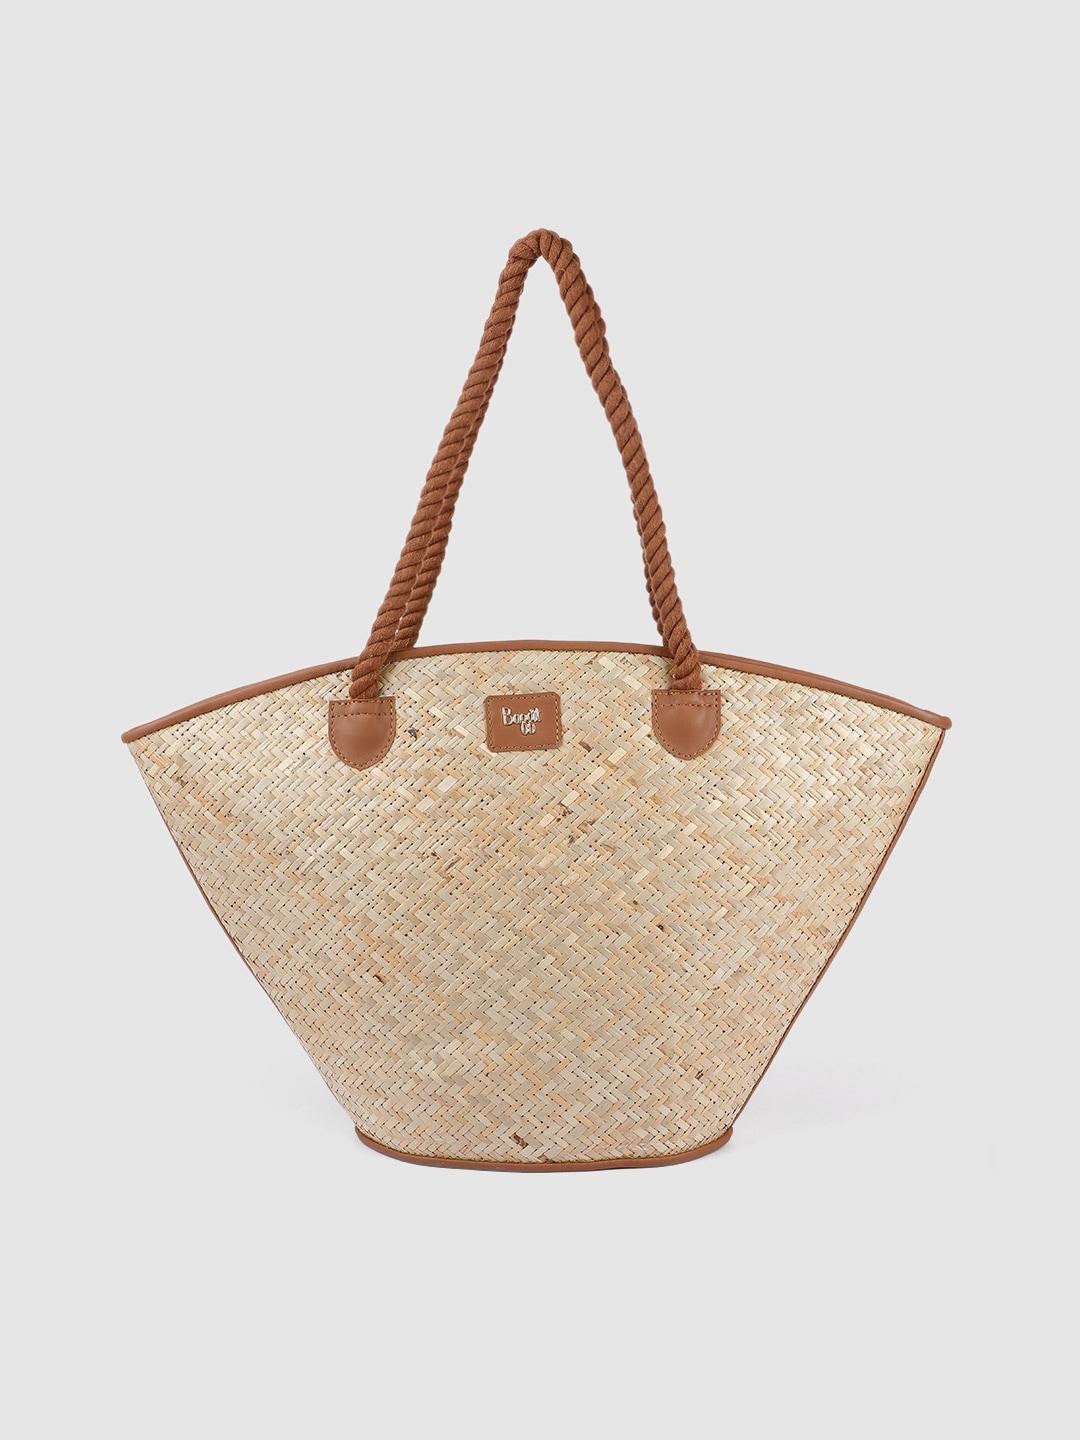 baggit tan brown & beige basket weave caprice silvy shopper shoulder bag